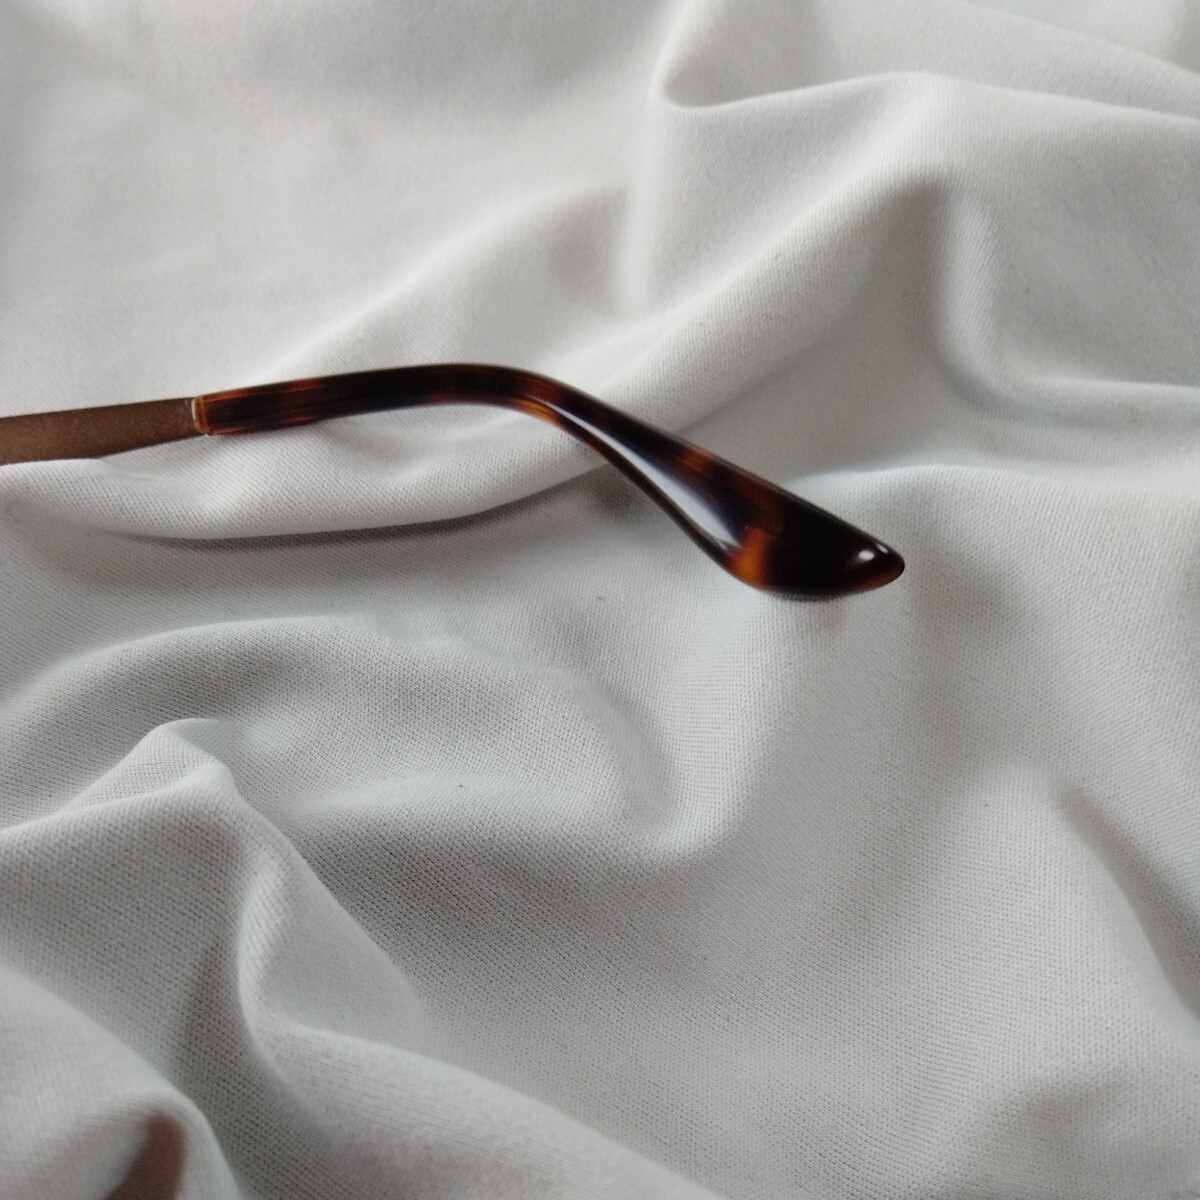 1 иен прекрасный товар RayBan Ray-Ban RB3453 * солнцезащитные очки * bronze панцирь черепахи рисунок 2256